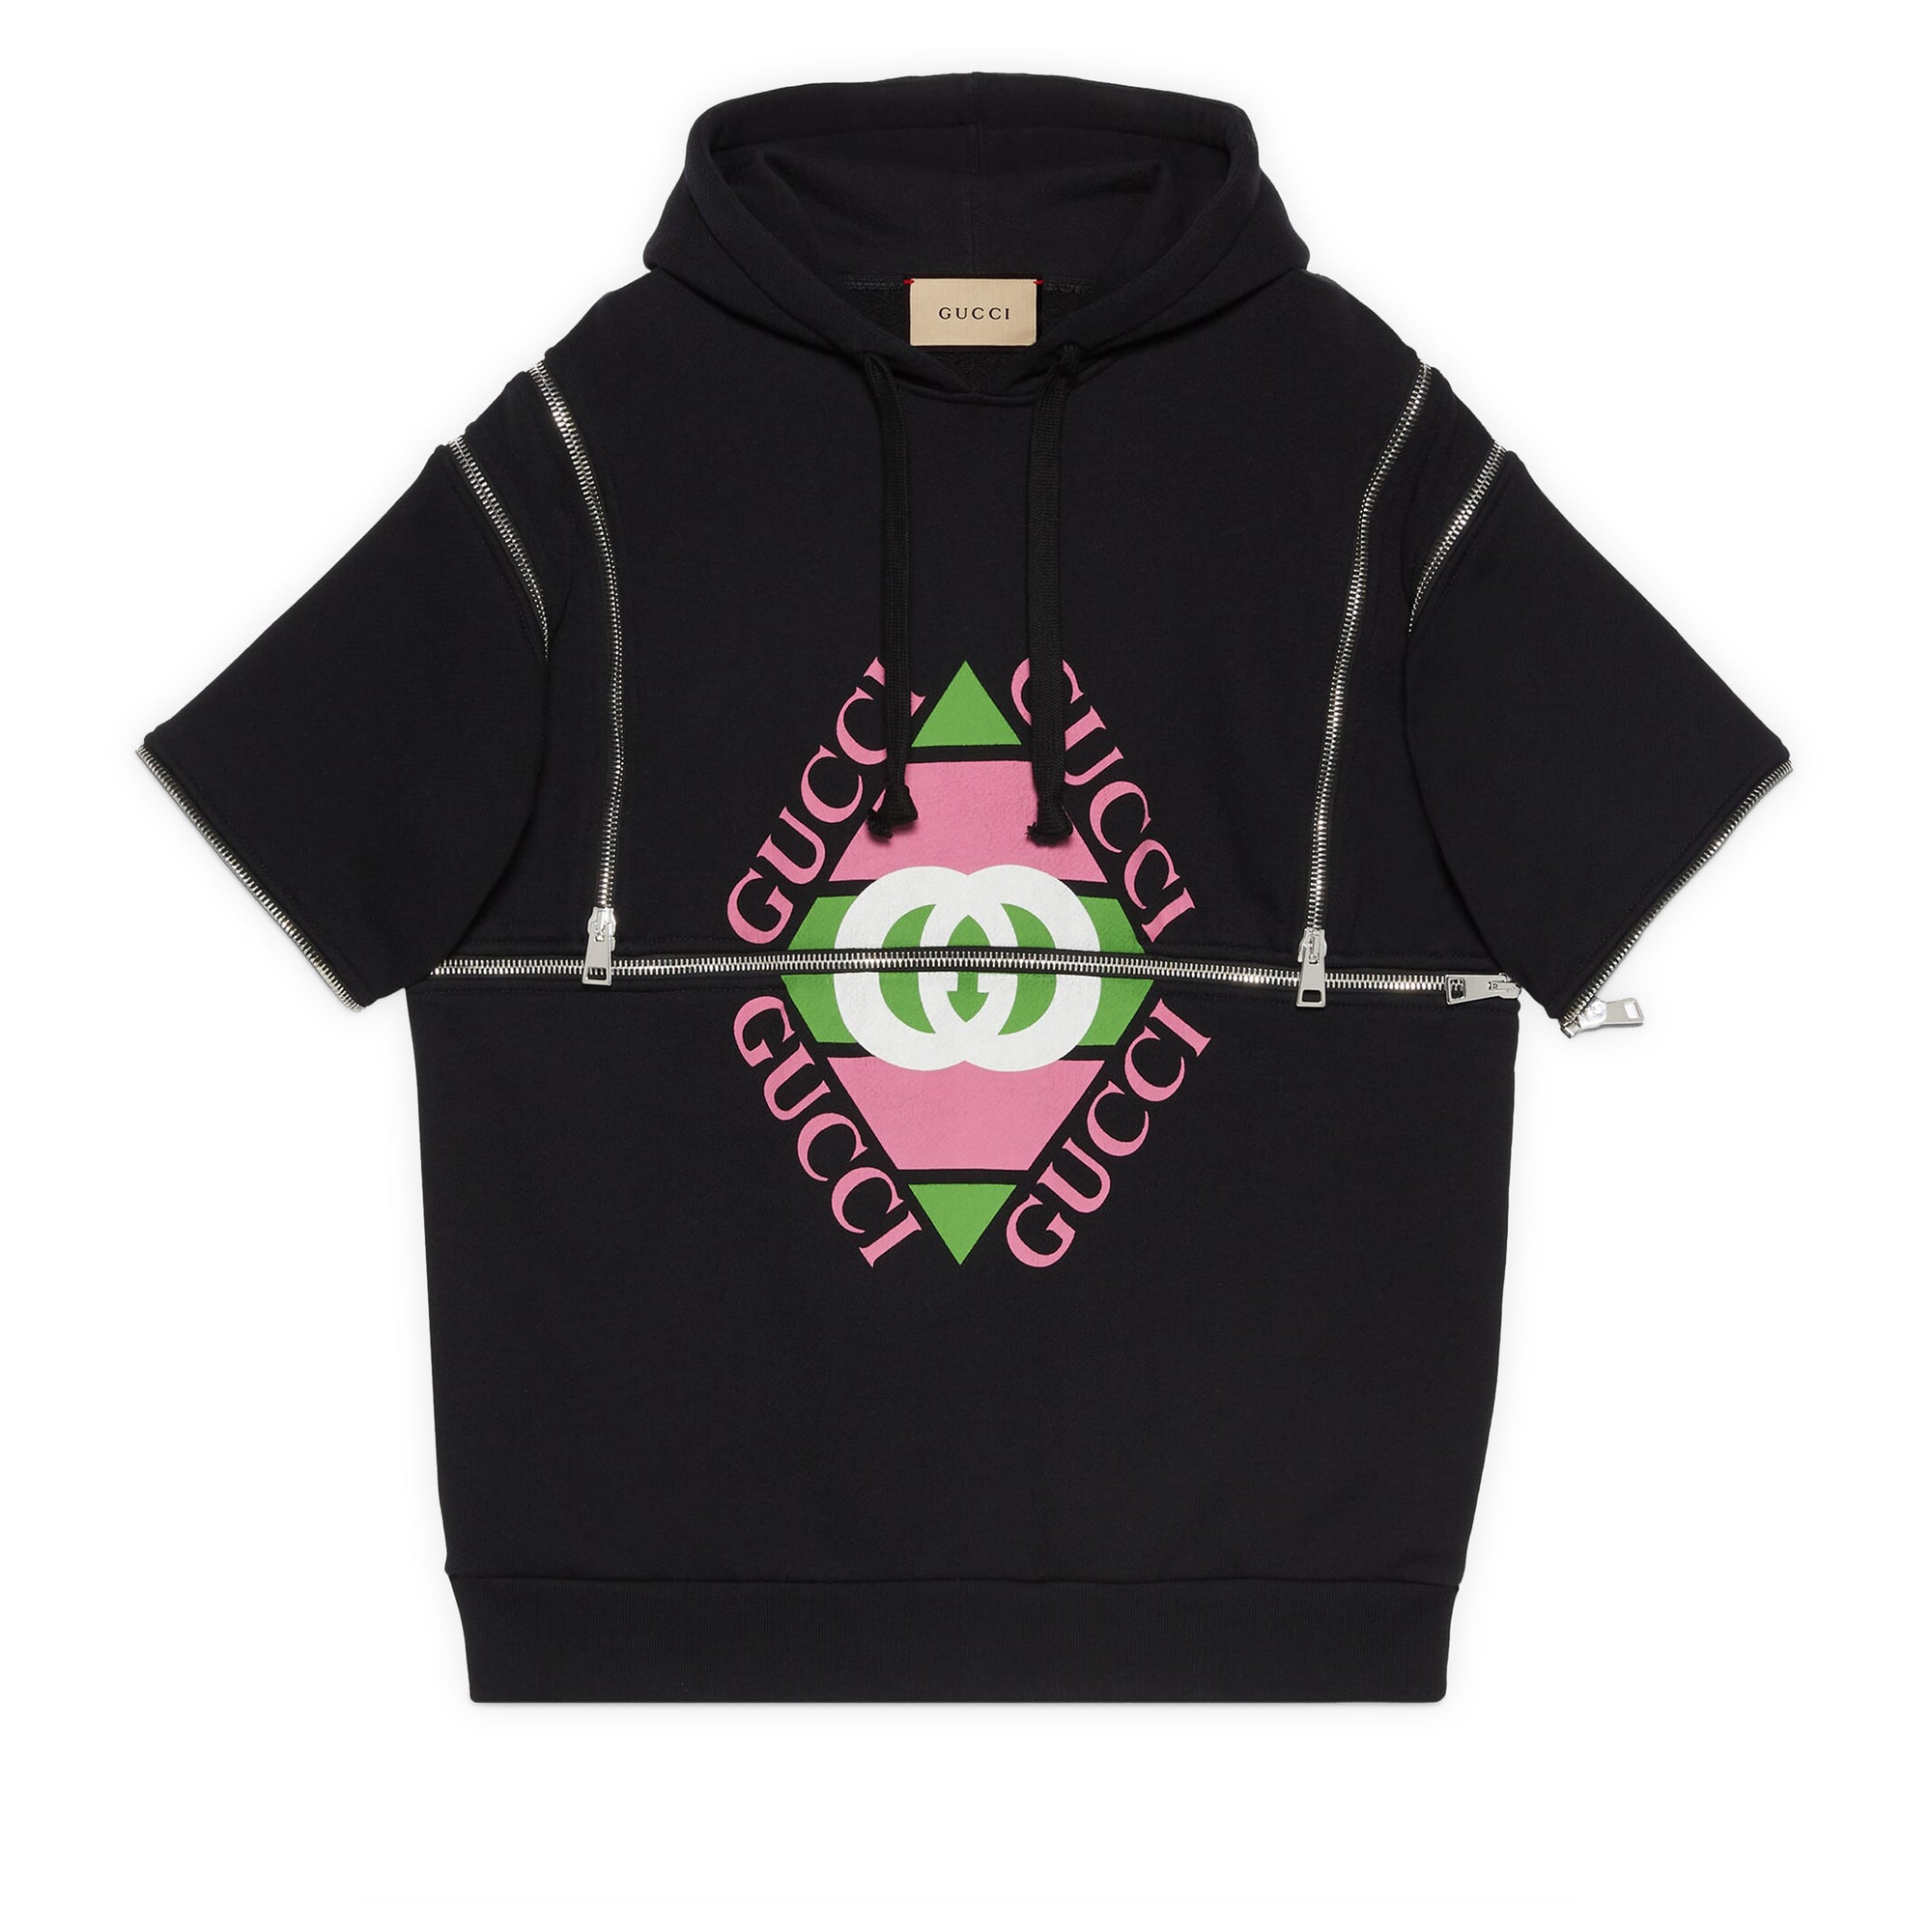 Gucci - Women's Gucci Vintage Logo Sweatshirt - (Black/Multicolor) view 2